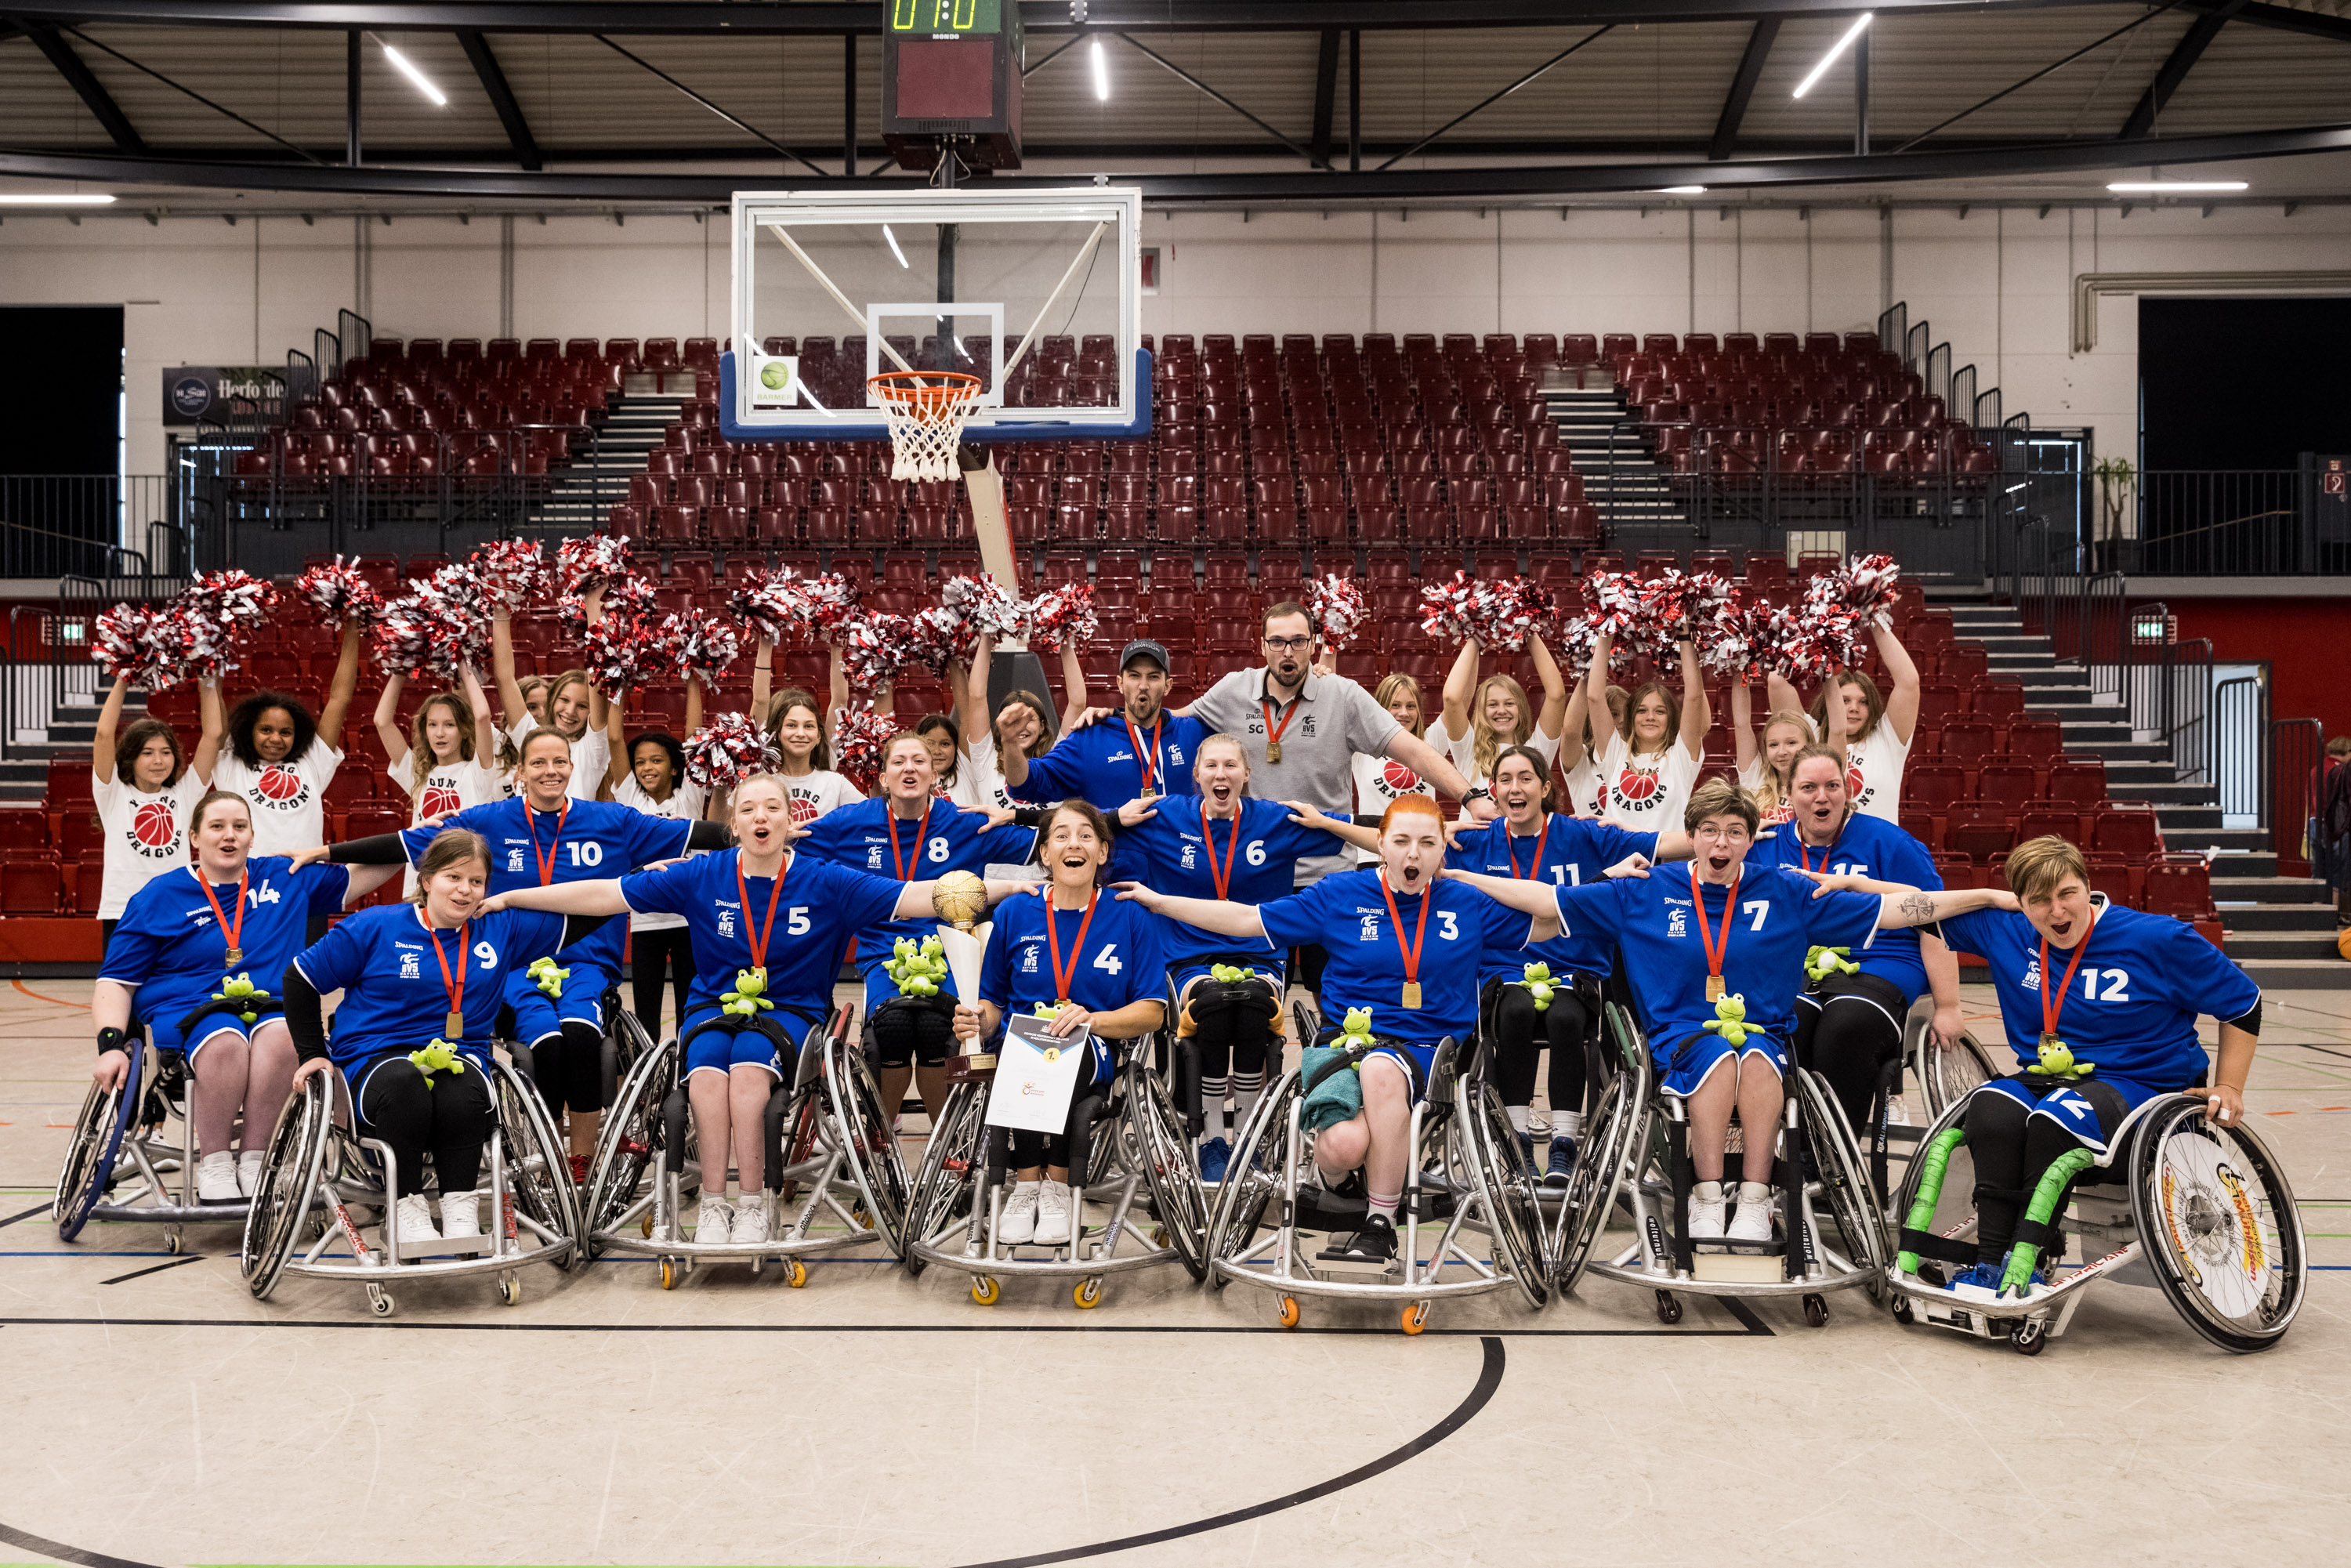 Das bayerische Team der Damen im Rollstuhlbasketball hat sich zu einem Gruppenfoto in der Halle aufgestellt. Sie tragen Goldmedaillen, hinter ihnen sieht man Pompons.